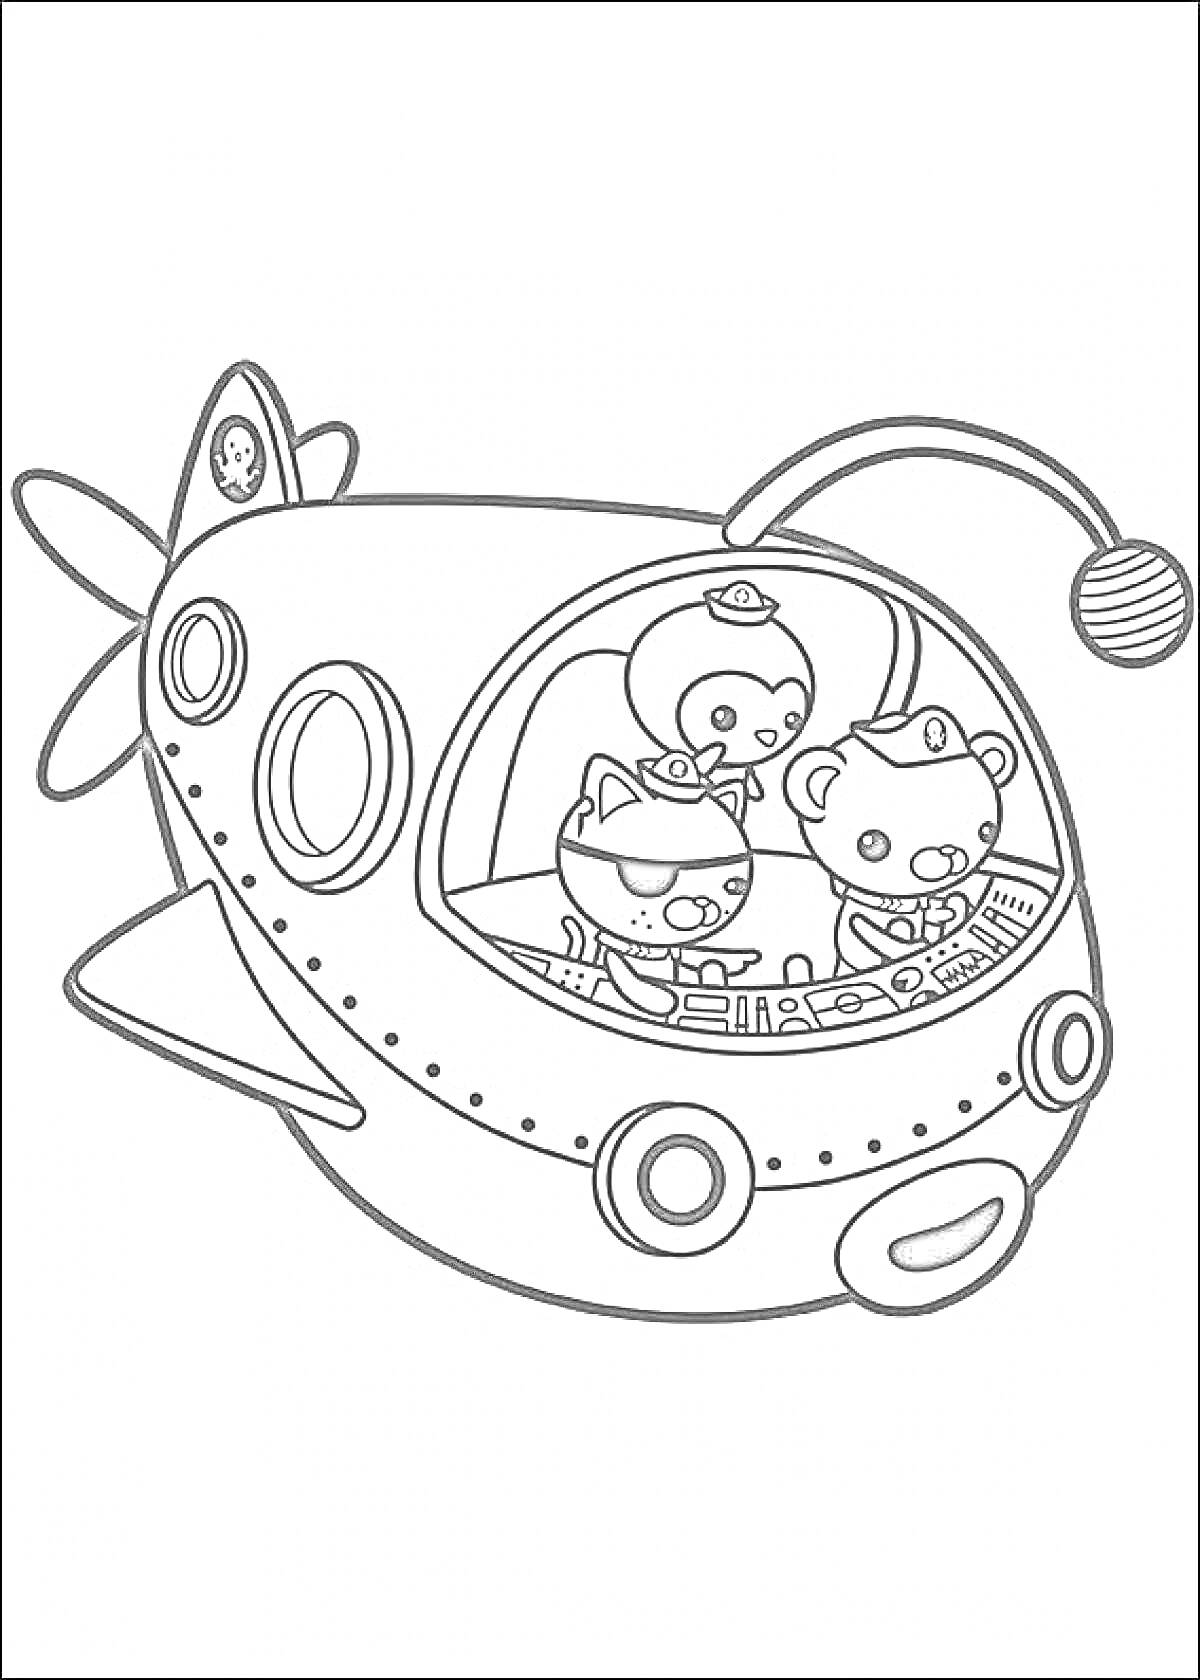 Раскраска Октонавты в подводной лодке с тремя персонажами в кабине